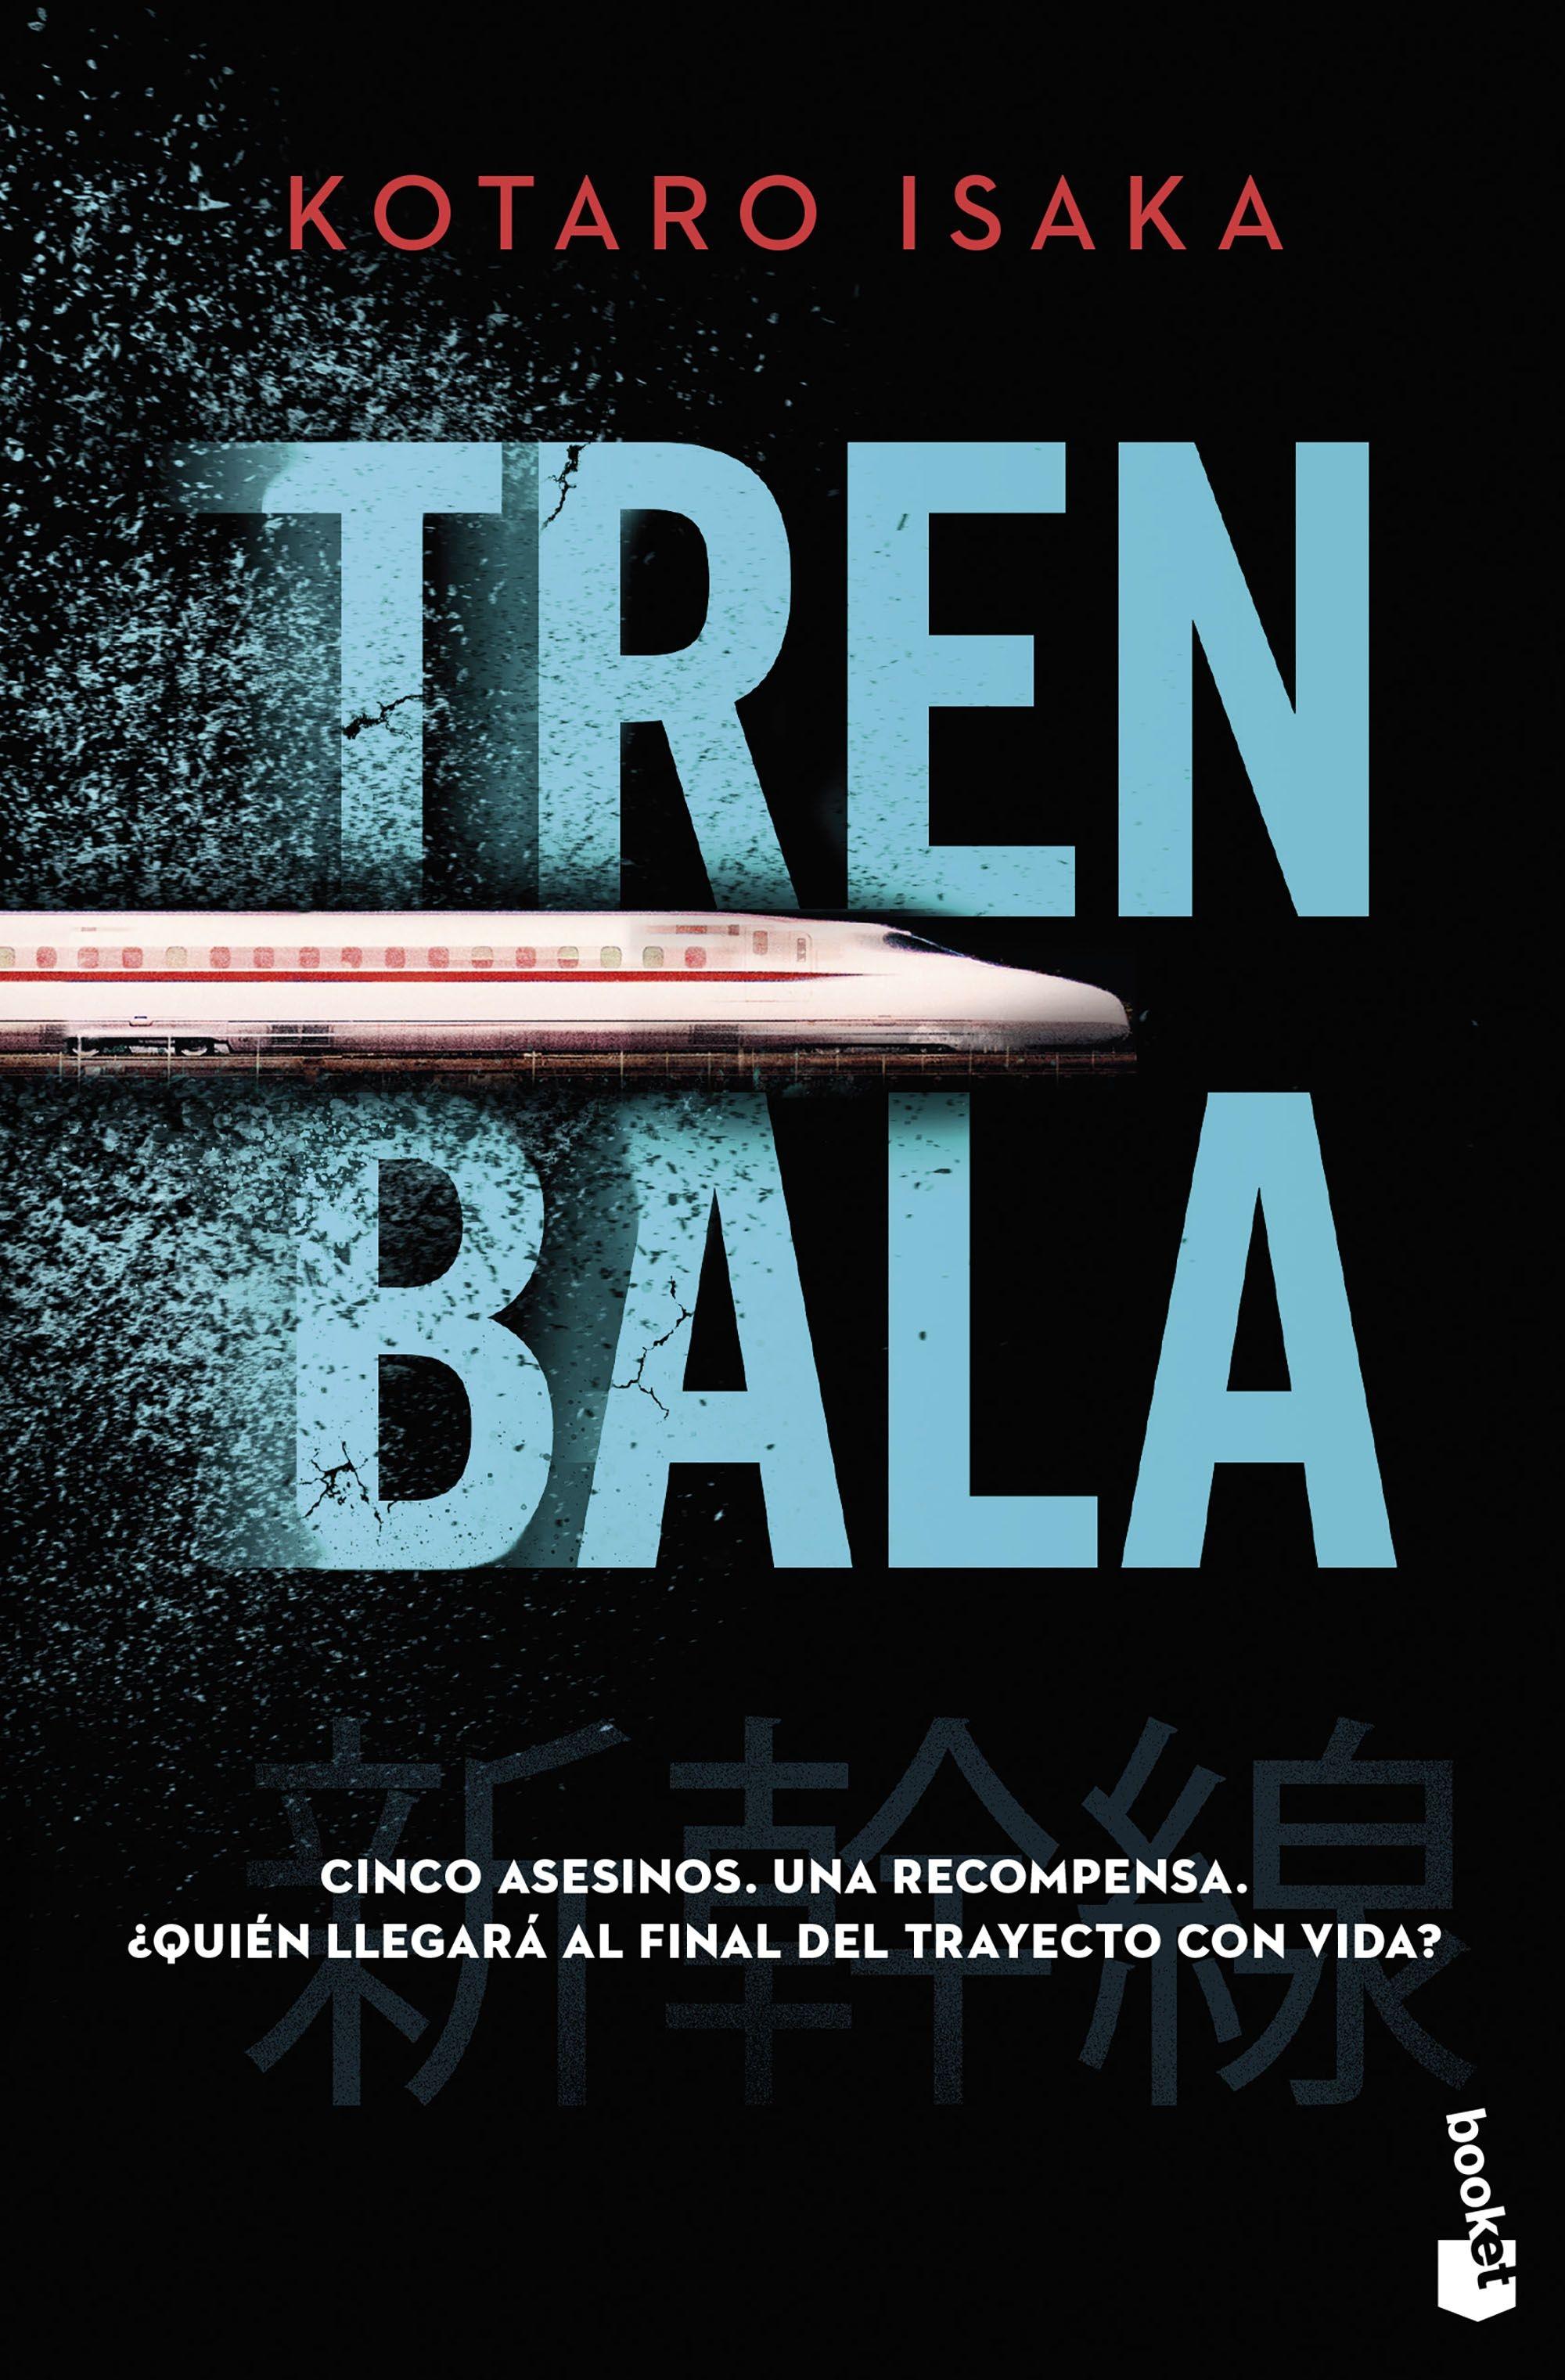 Tren bala "El libro que ha inspirado la película Bullet Train protagonizada por Bra"